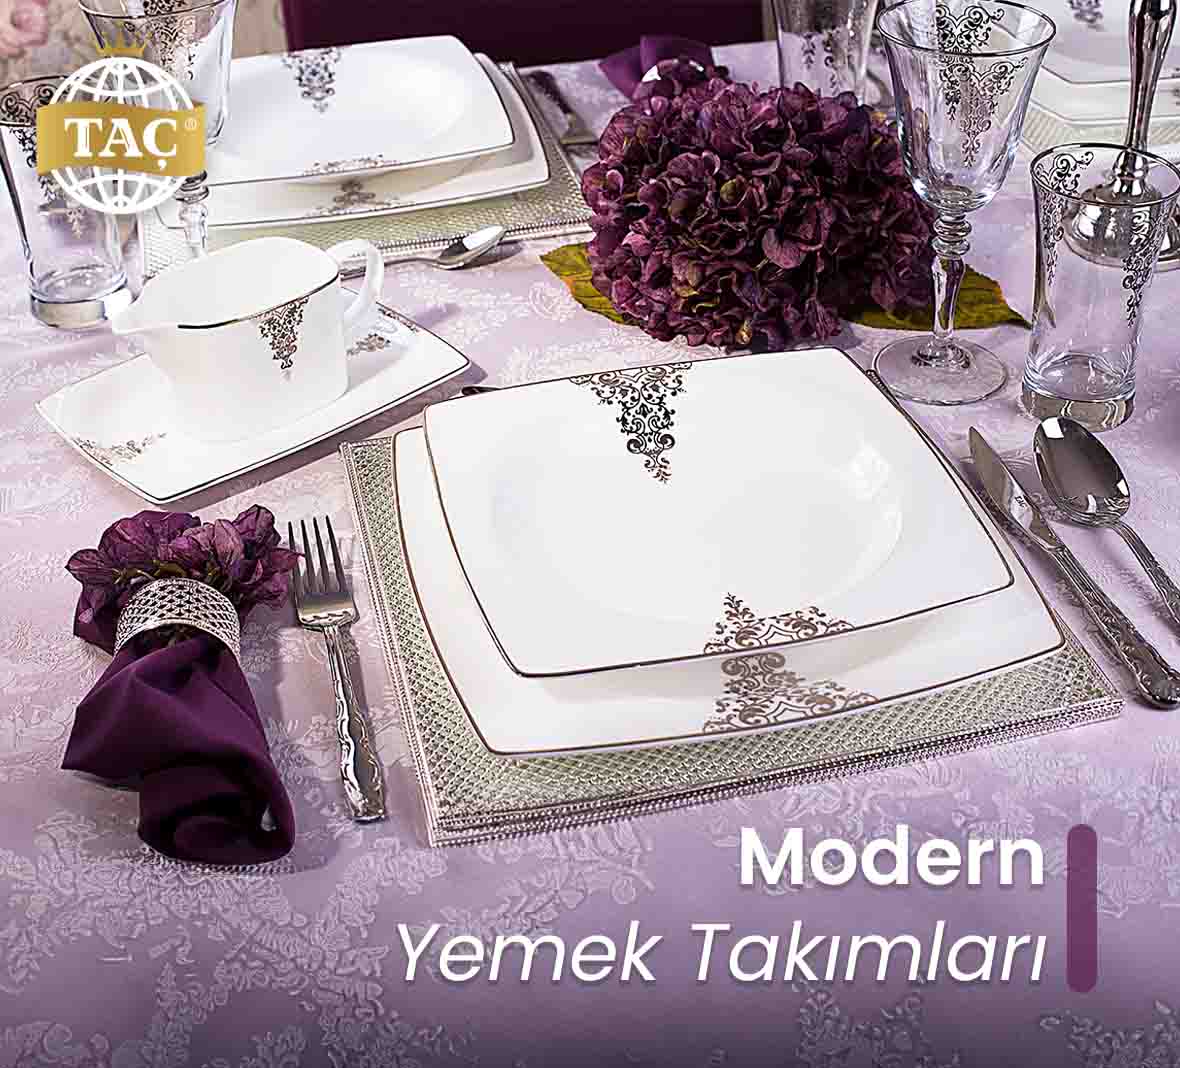 Modern Yemek Takımları - Taç - Tacev.com